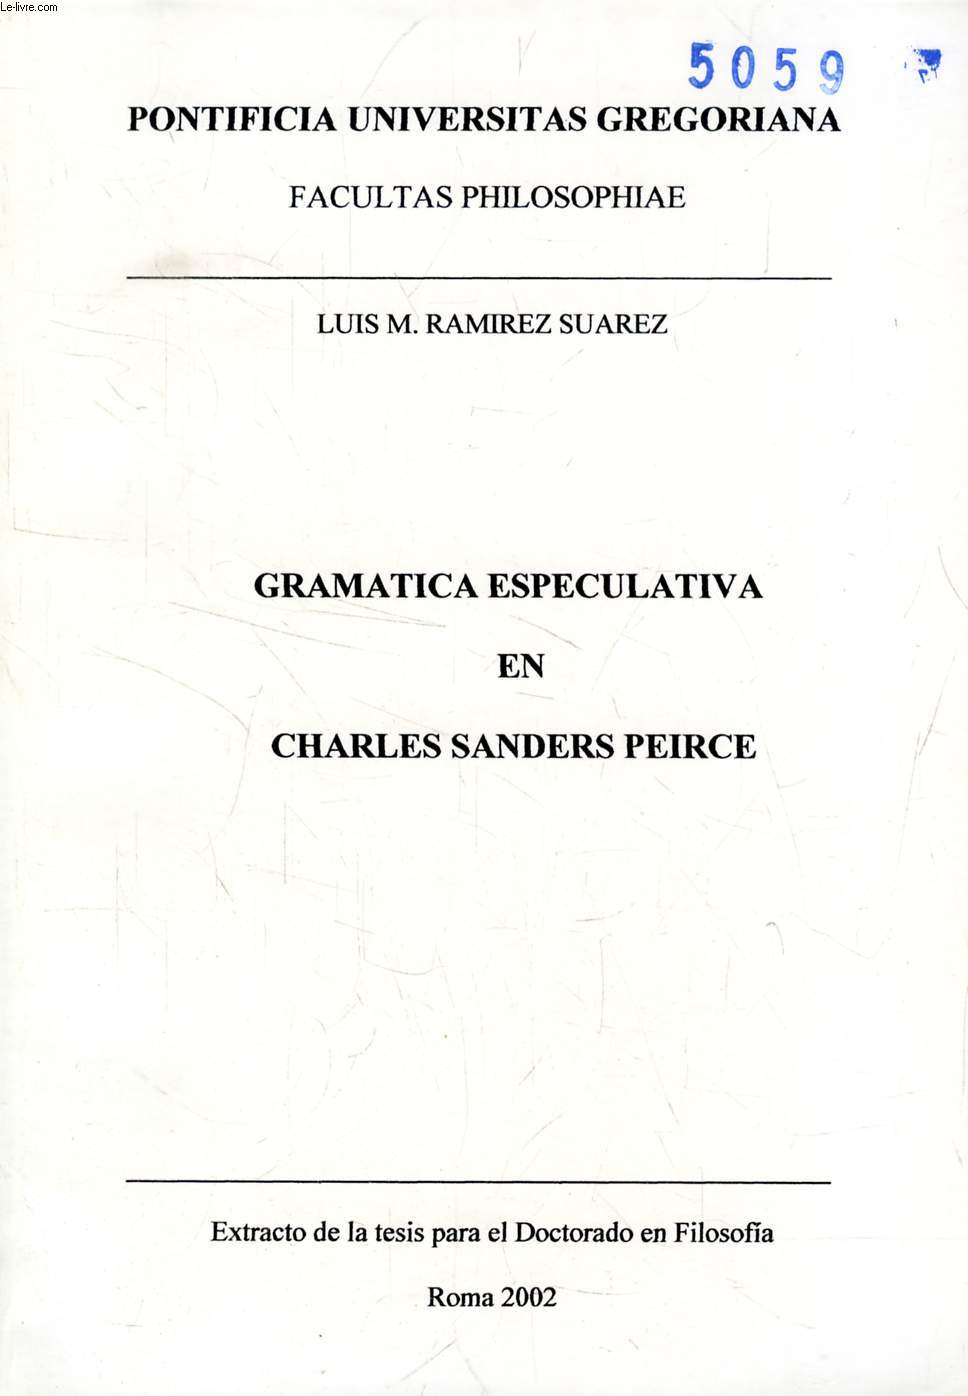 GRAMATICA ESPECULATIVA EN CHARLES SANDERS PEIRCE (EXTRACTO DE LA TESIS)